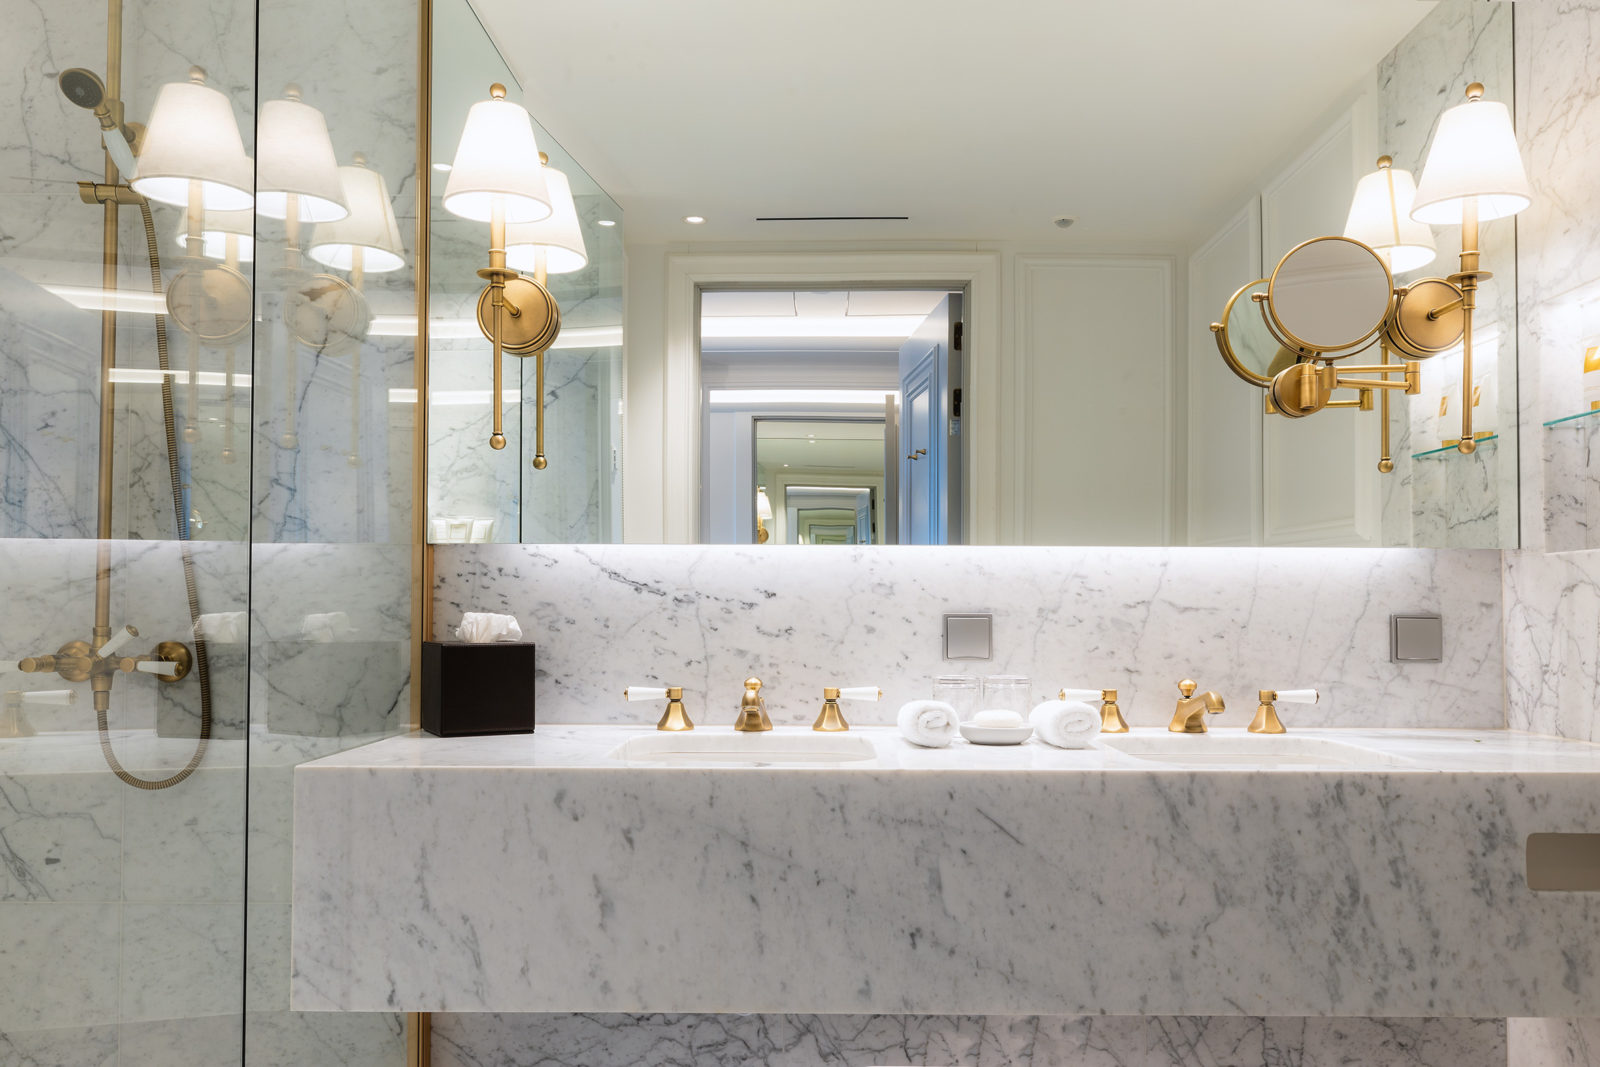 Deluxe suite - bad med vegger og servant kledd i marmor. Interiørdetaljer i gull